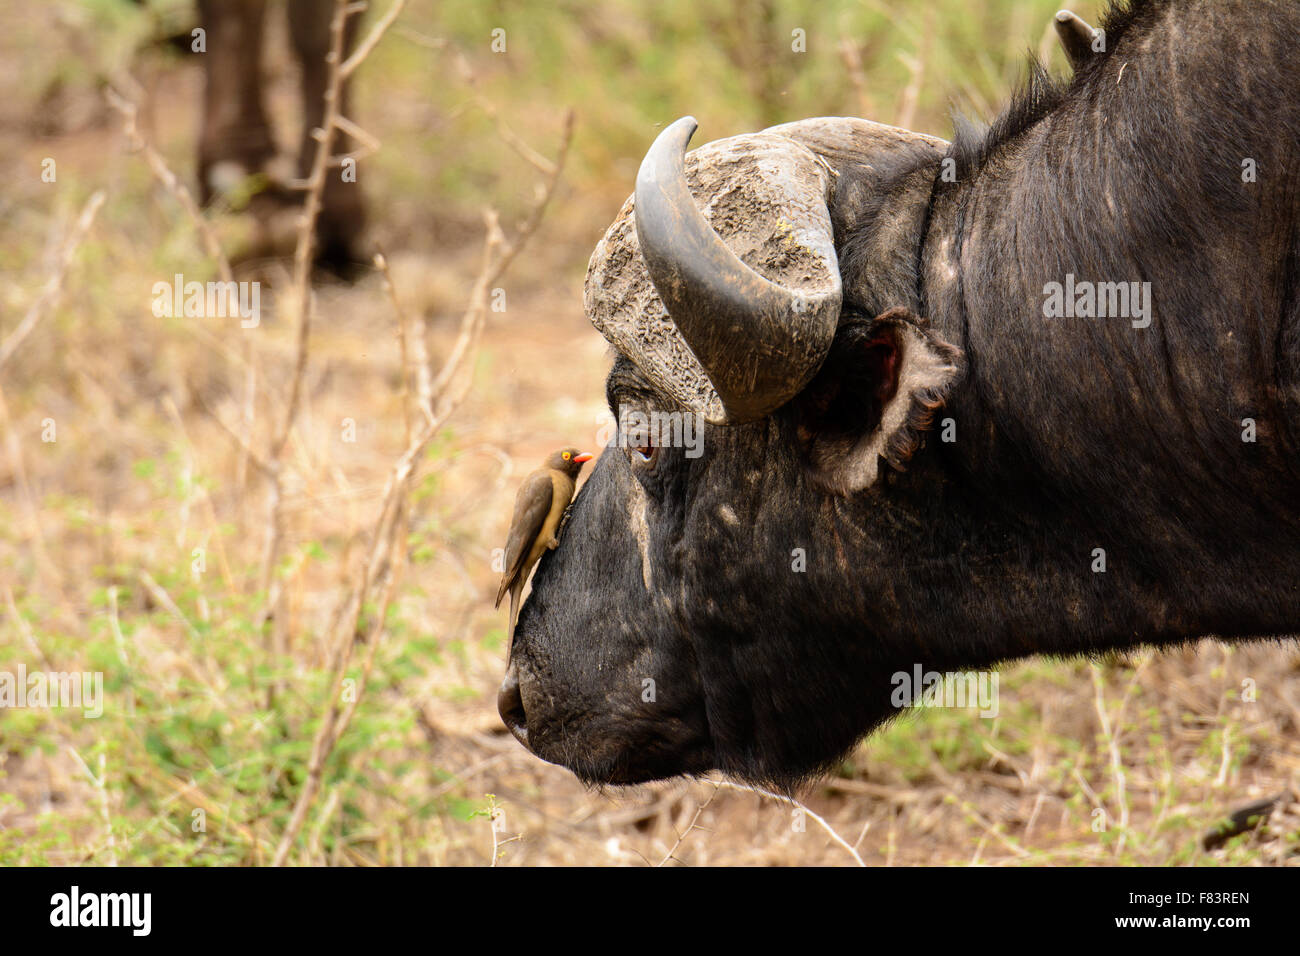 Schuss in den Kopf von einem Büffel und eine Oxpecker sehen Auge in Auge Stockfoto